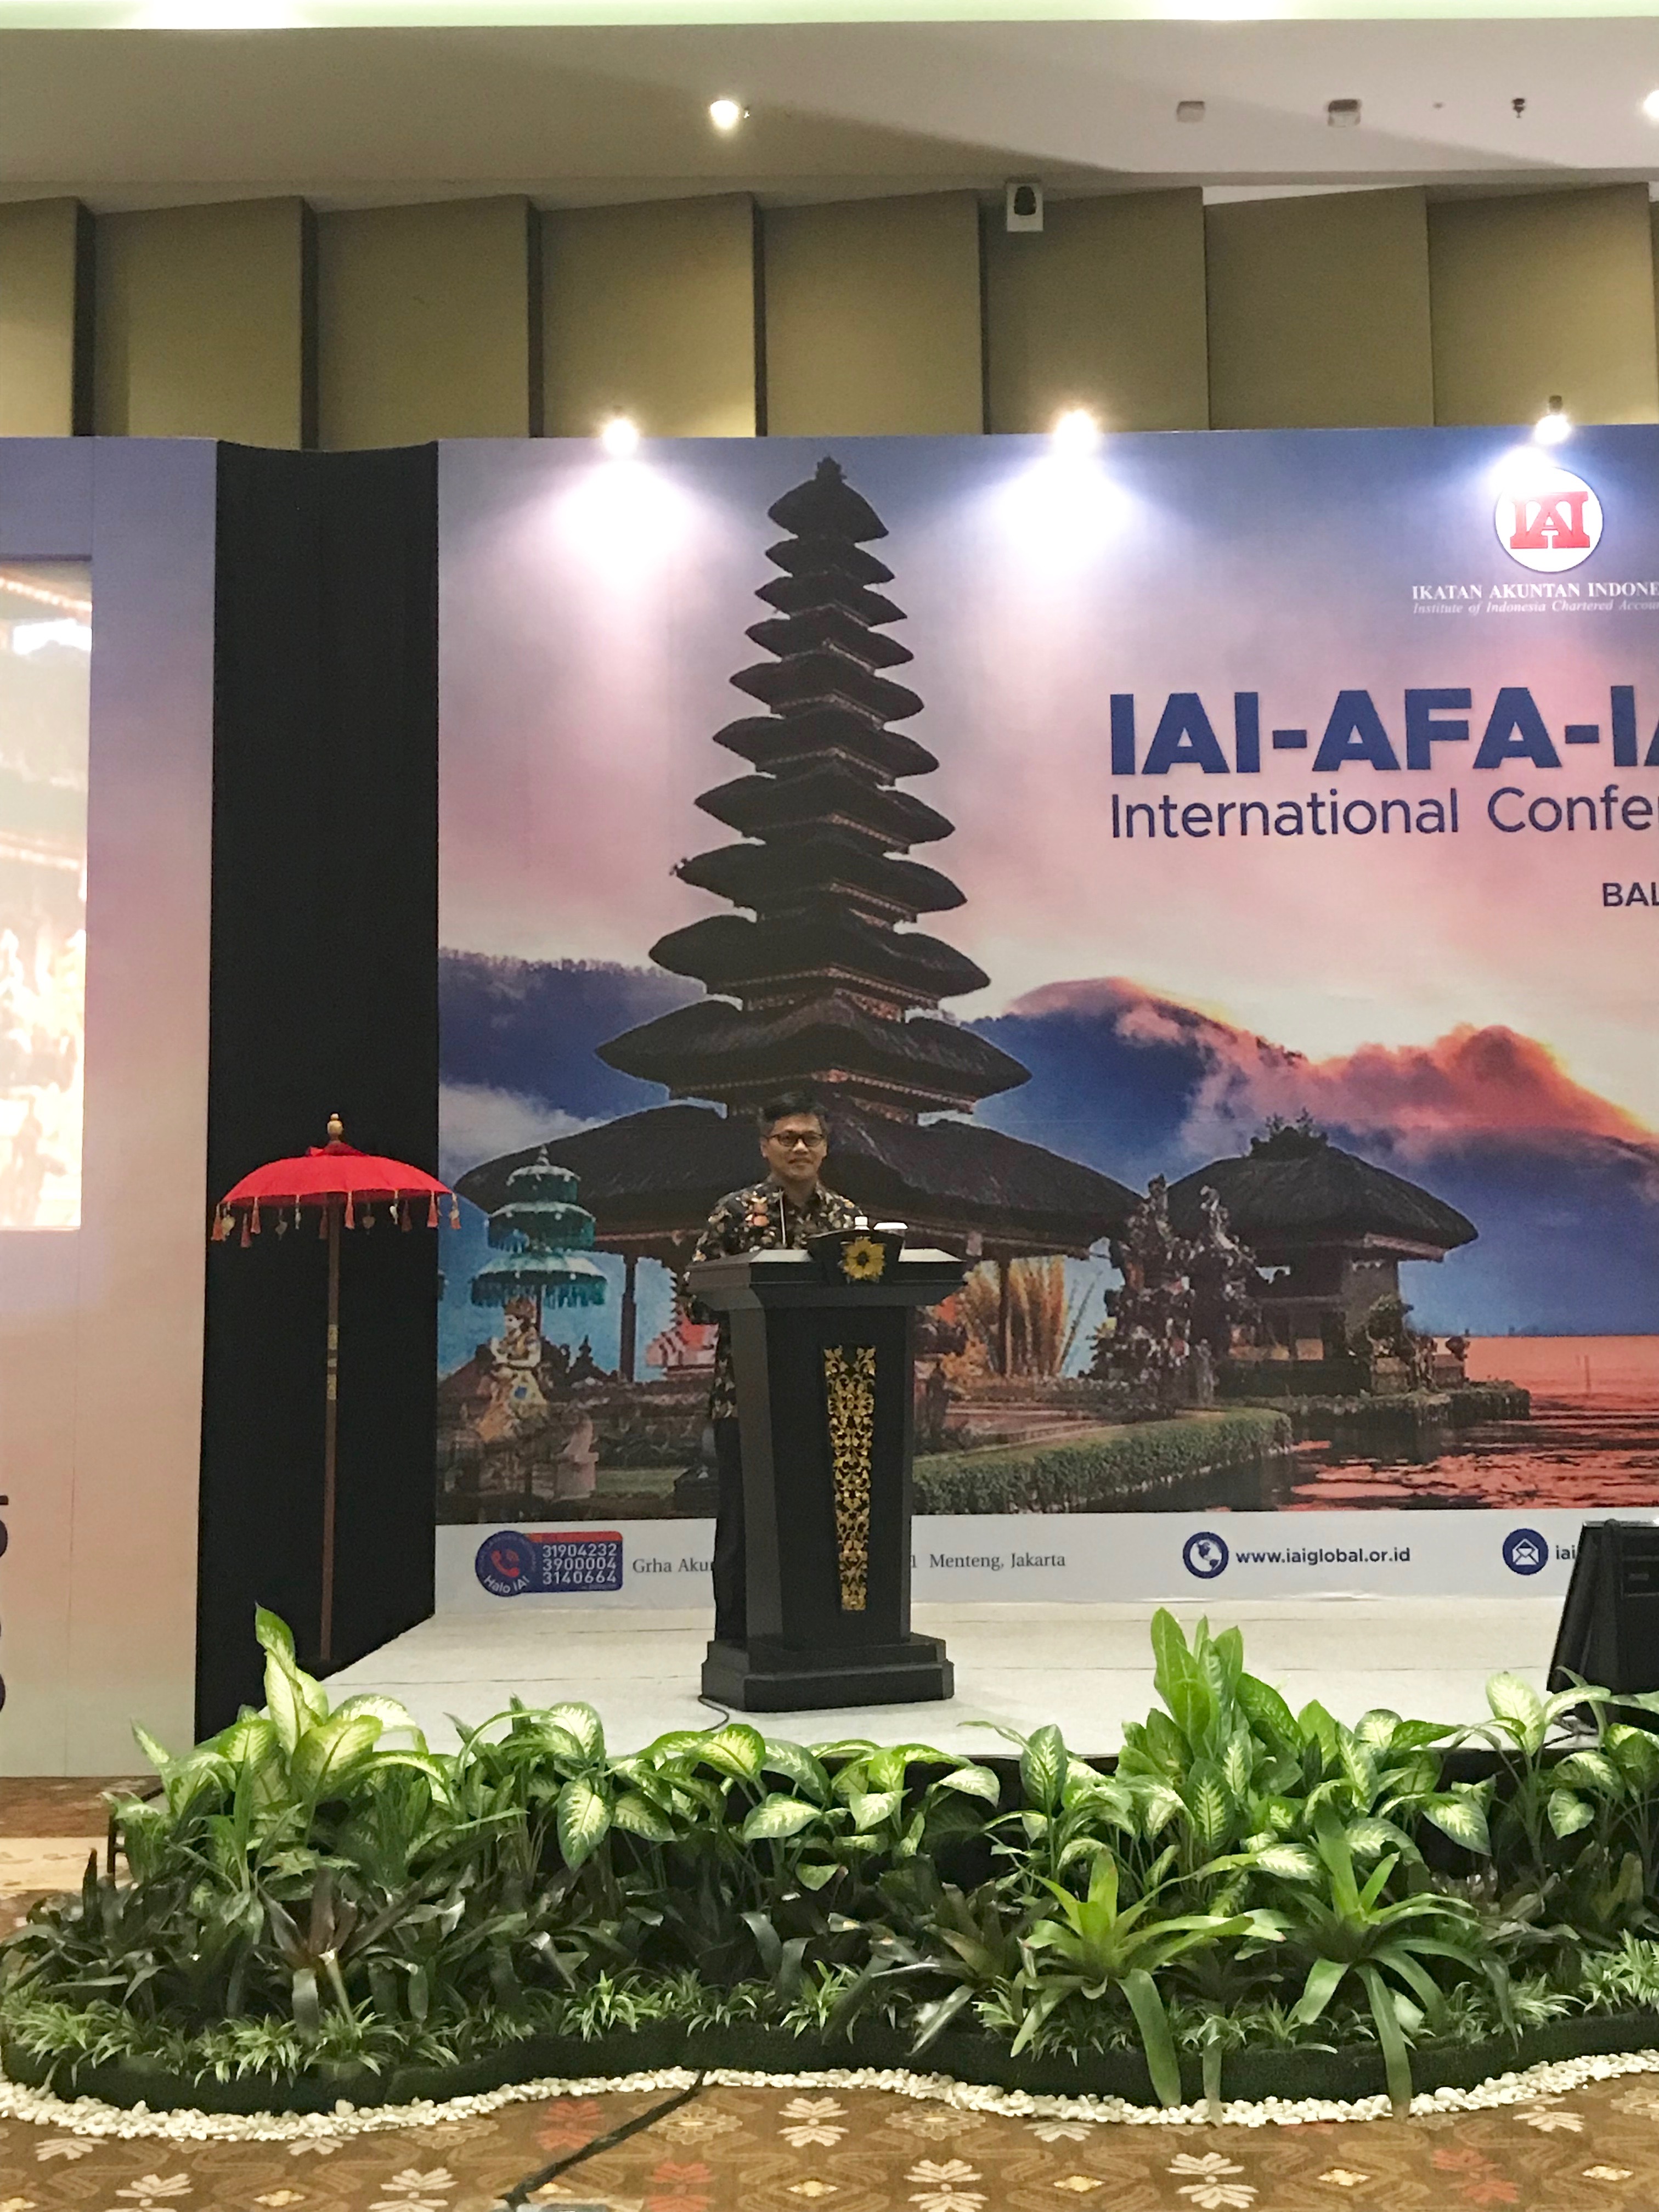 IAI AFA IAESB International Conference